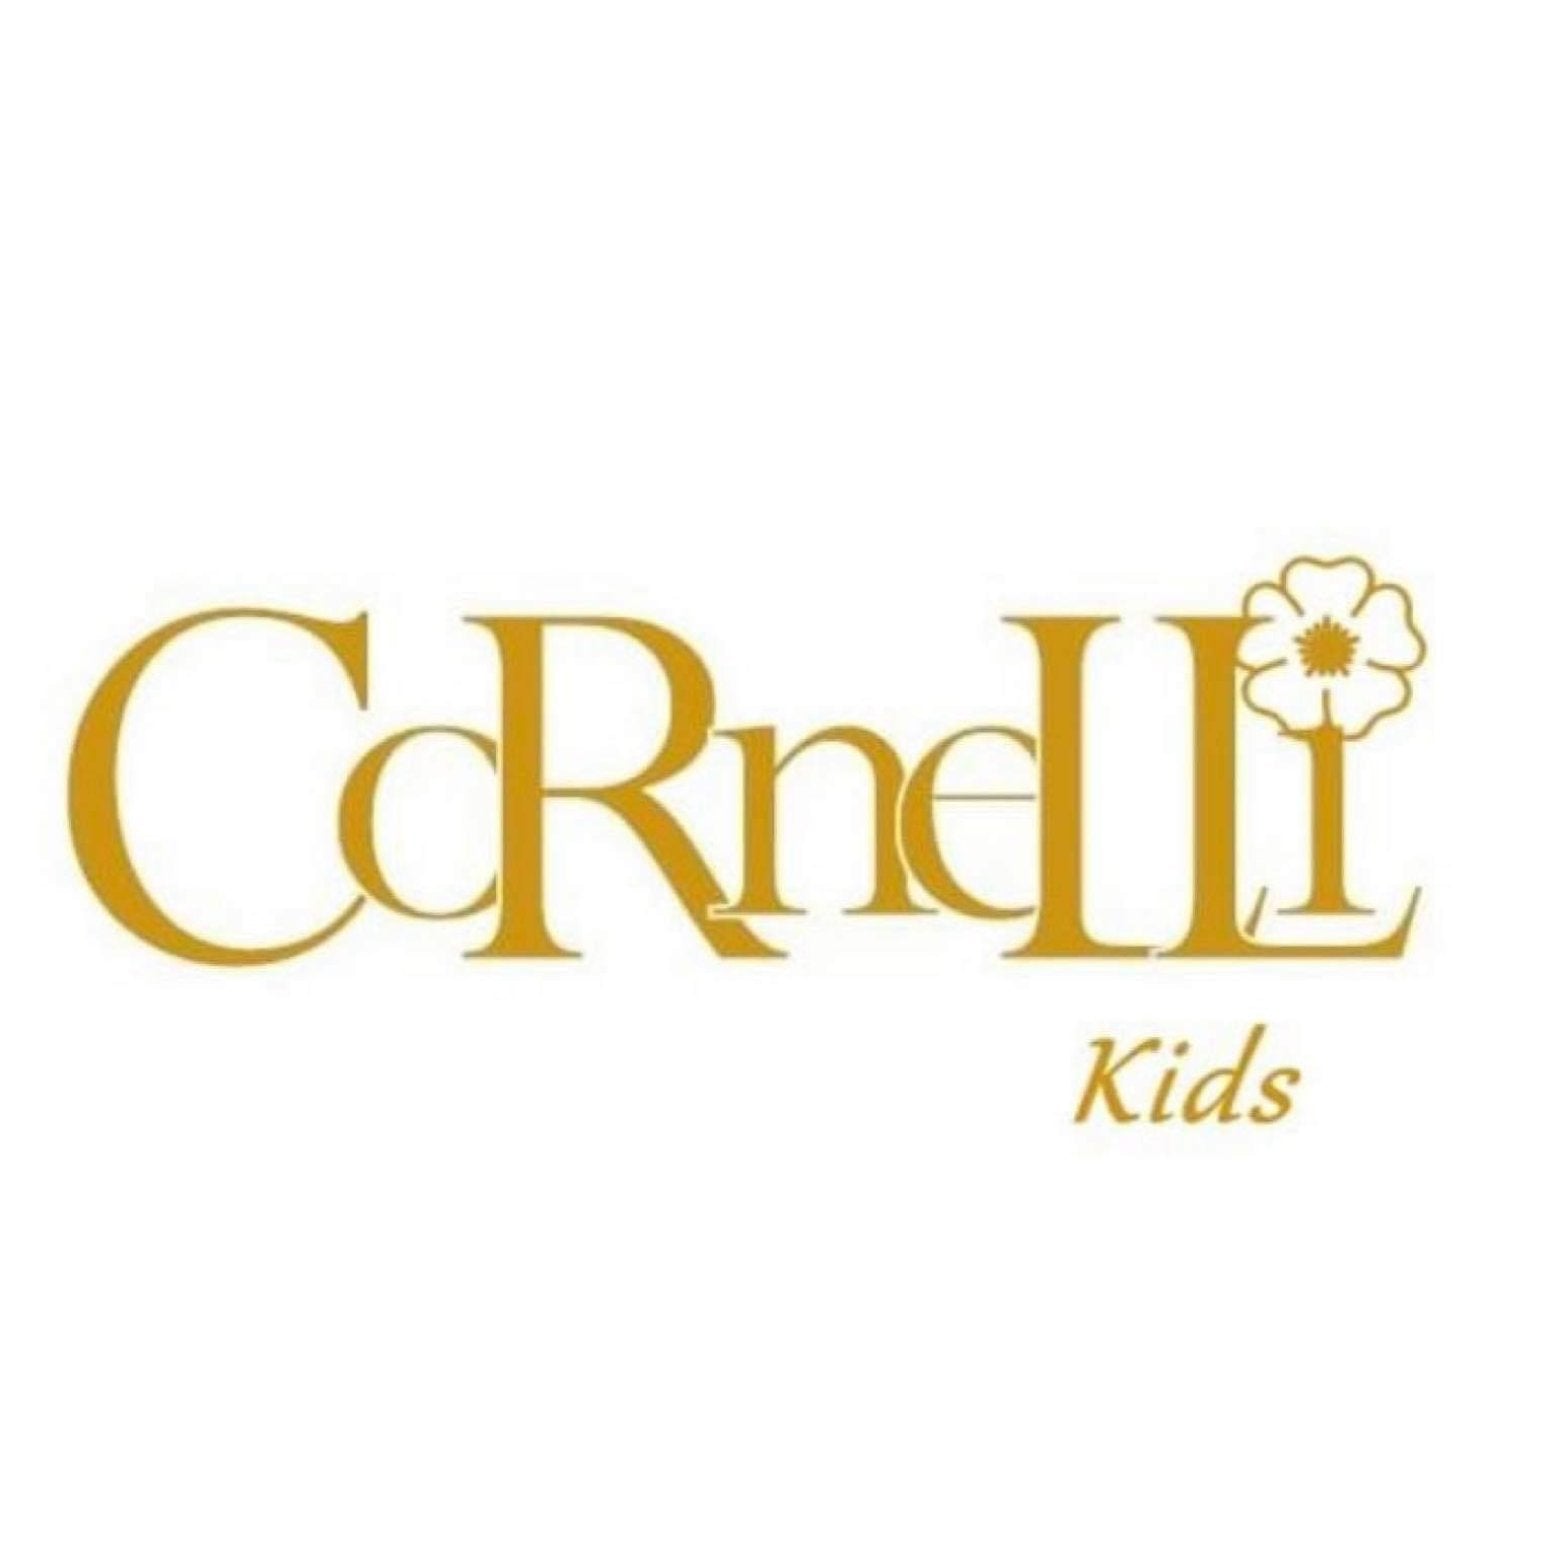 Cornelli Kids